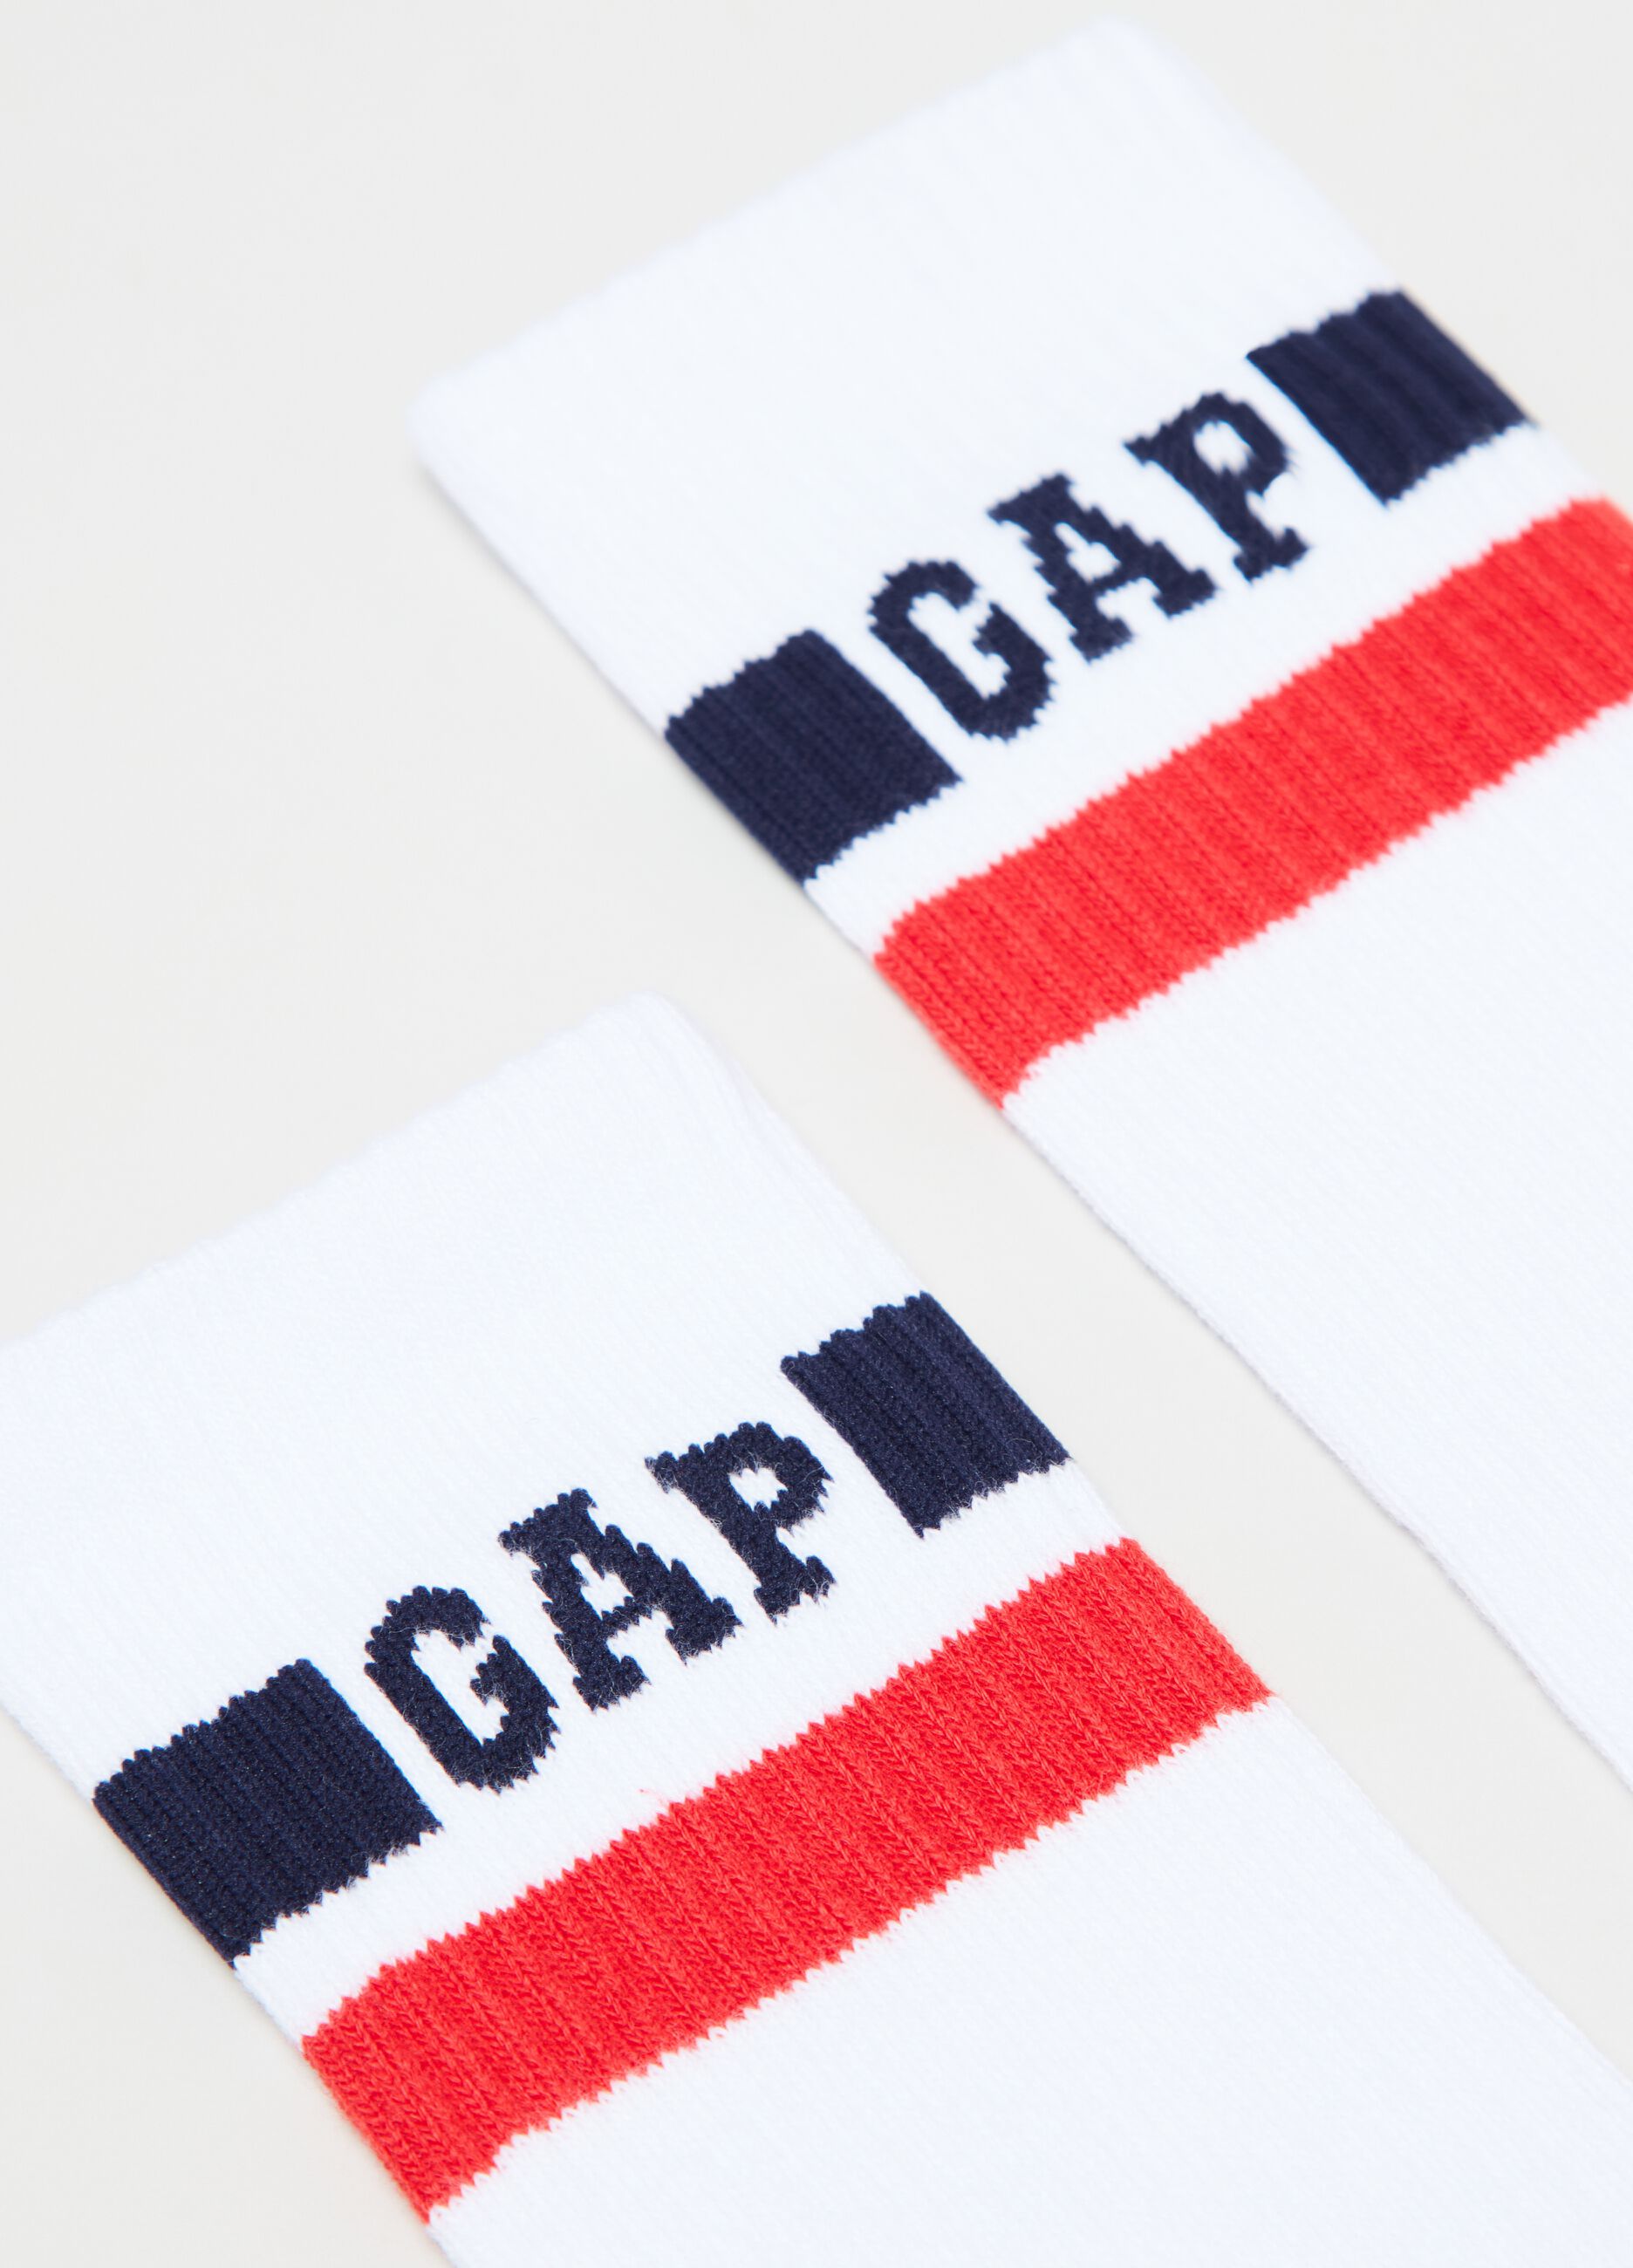 Ribbed socks with logo